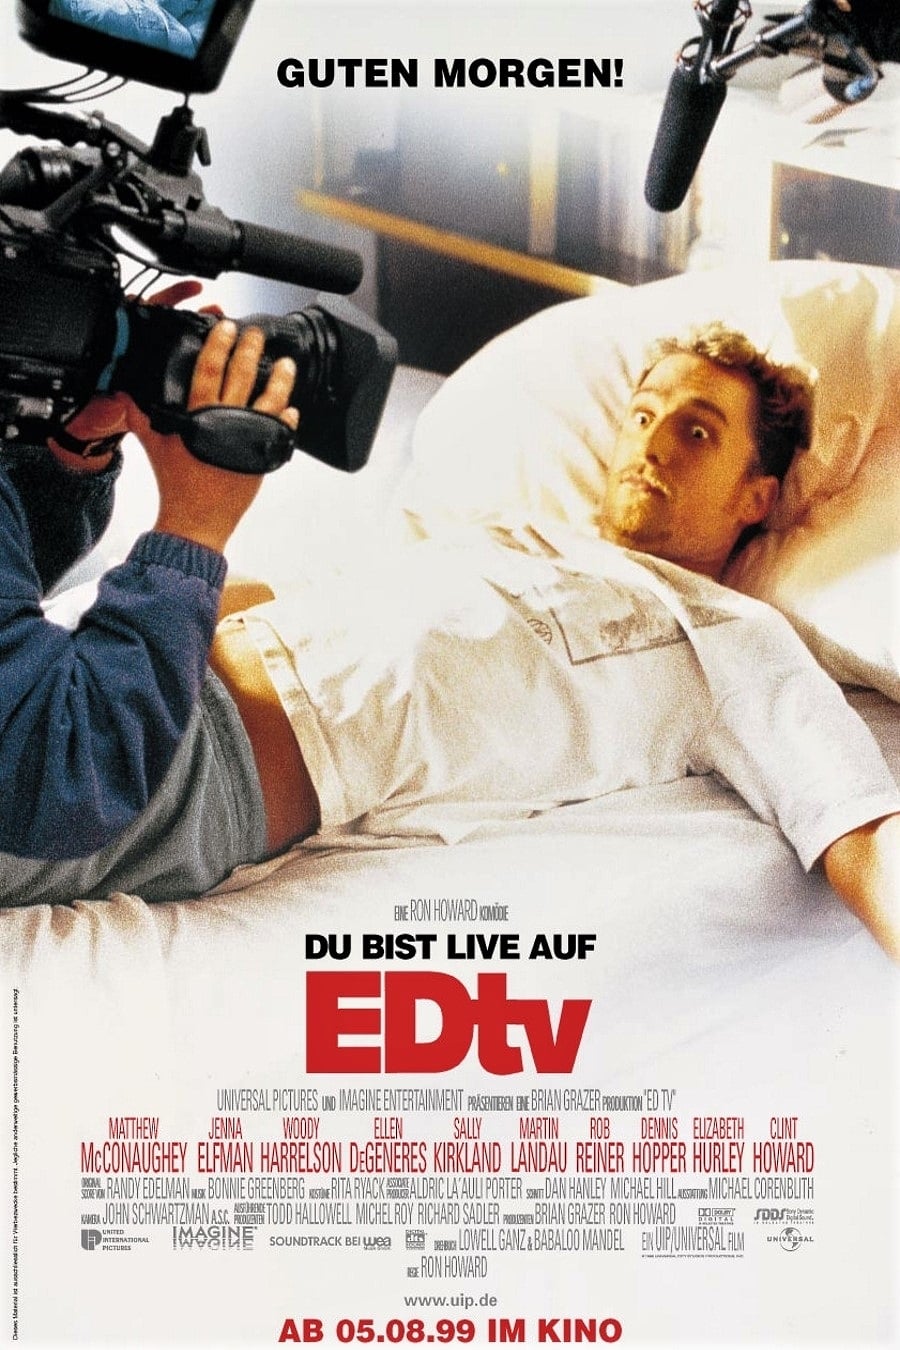 Plakat von "EDtv"